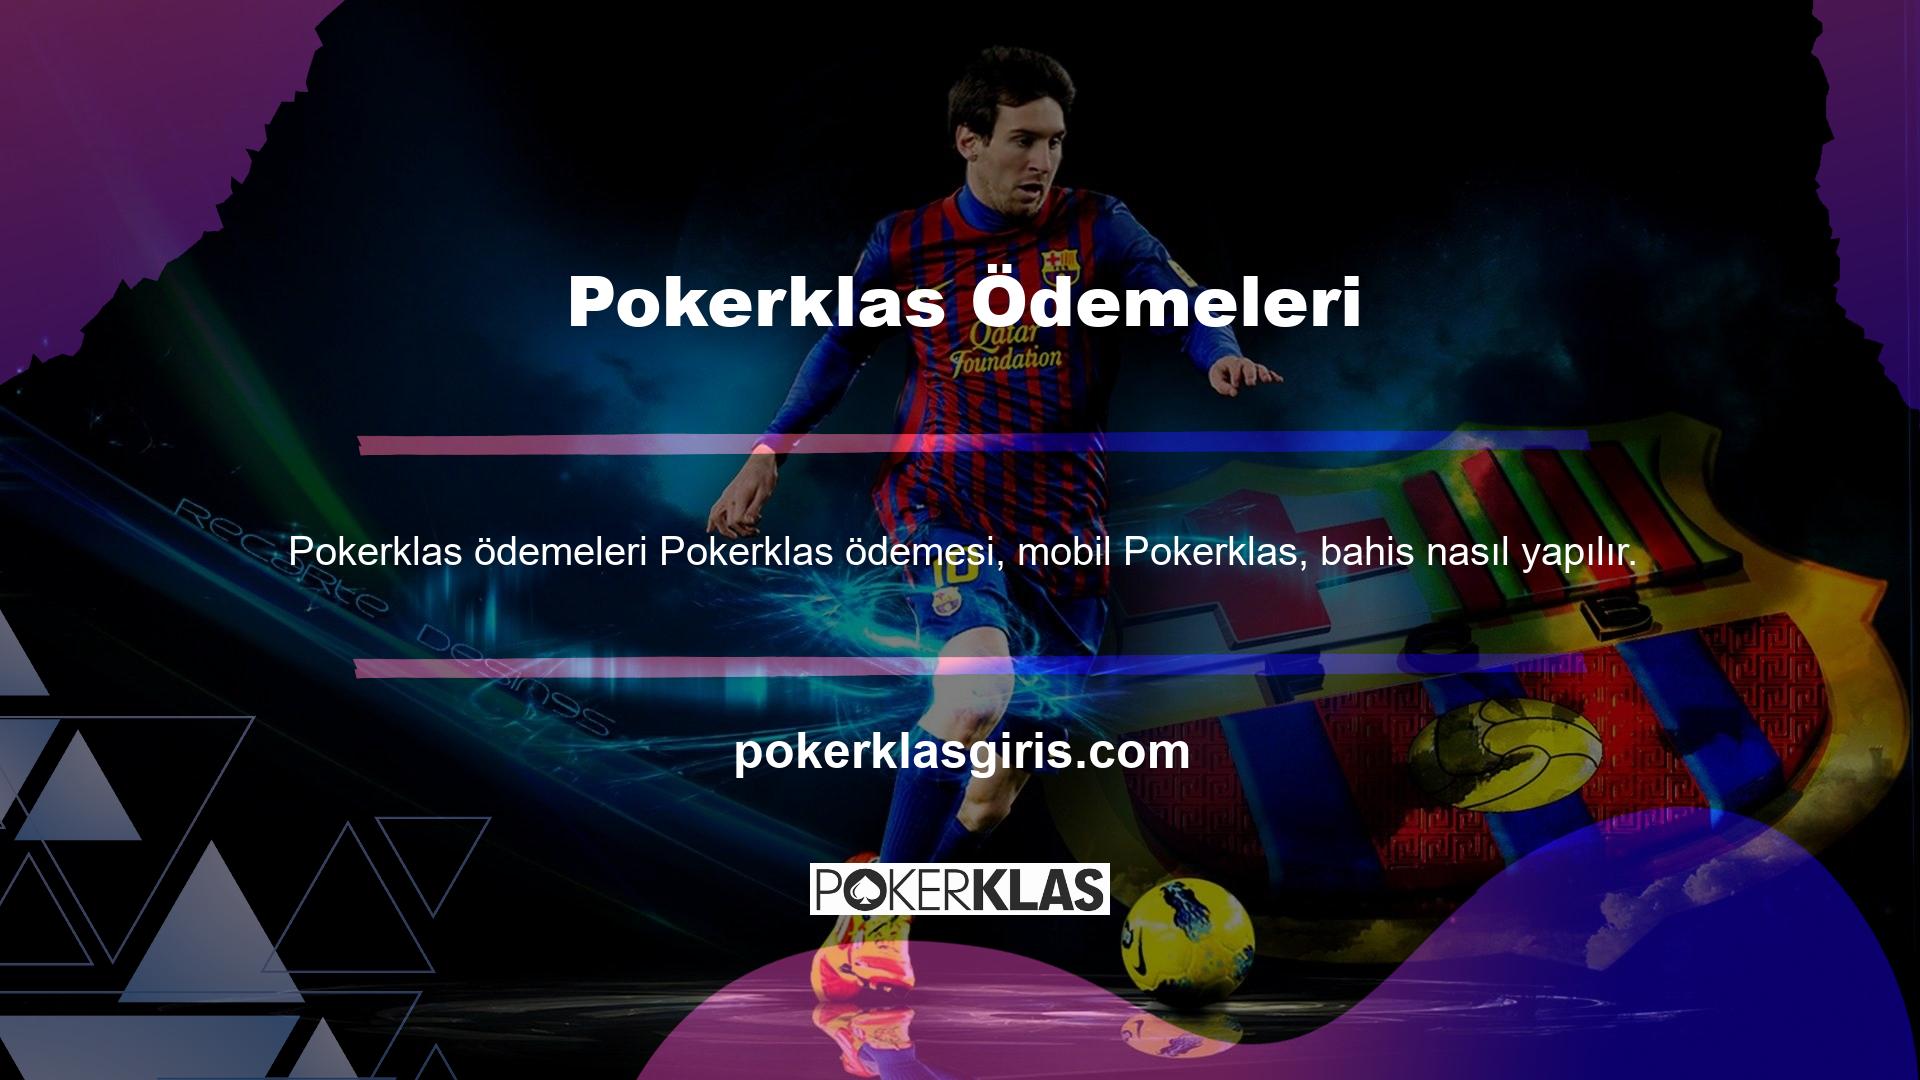 Pokerklas, Türkiye’de güvenli bir Casino şirketidir